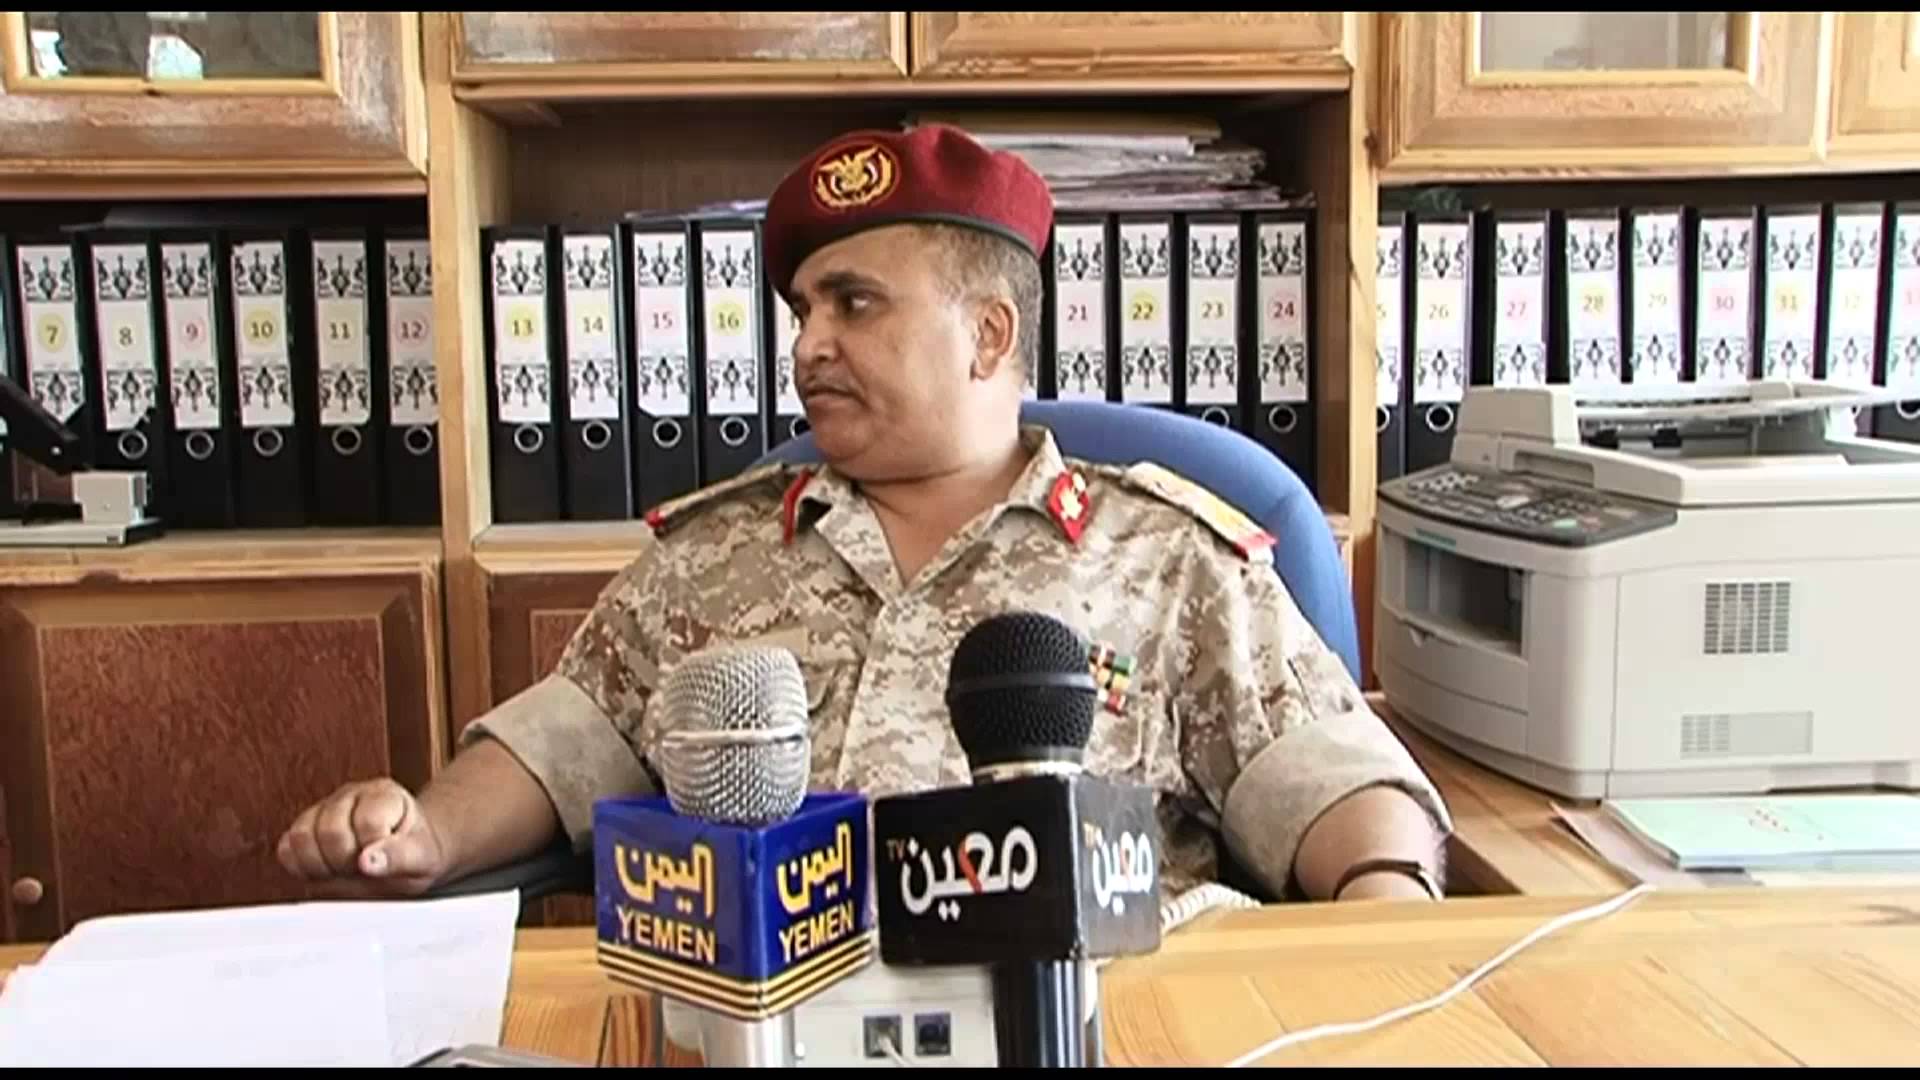 من هو القائد الجديد للمنطقة العسكرية الخامسة اللواء عادل القميري؟ (صورة + سيرة ذاتية)